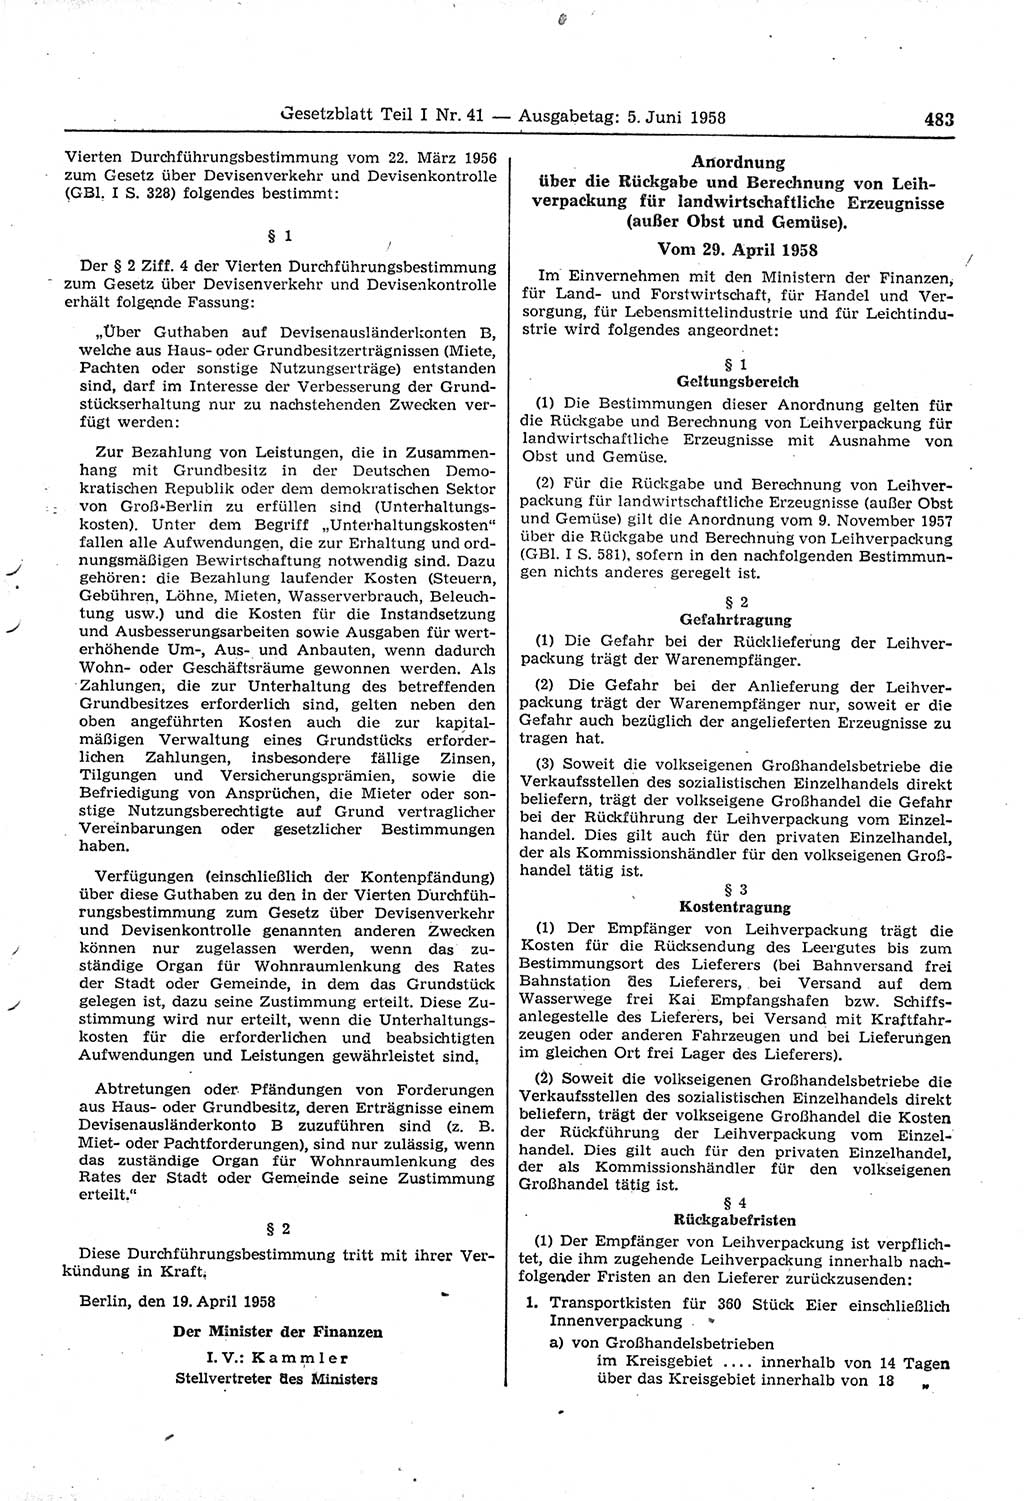 Gesetzblatt (GBl.) der Deutschen Demokratischen Republik (DDR) Teil Ⅰ 1958, Seite 483 (GBl. DDR Ⅰ 1958, S. 483)